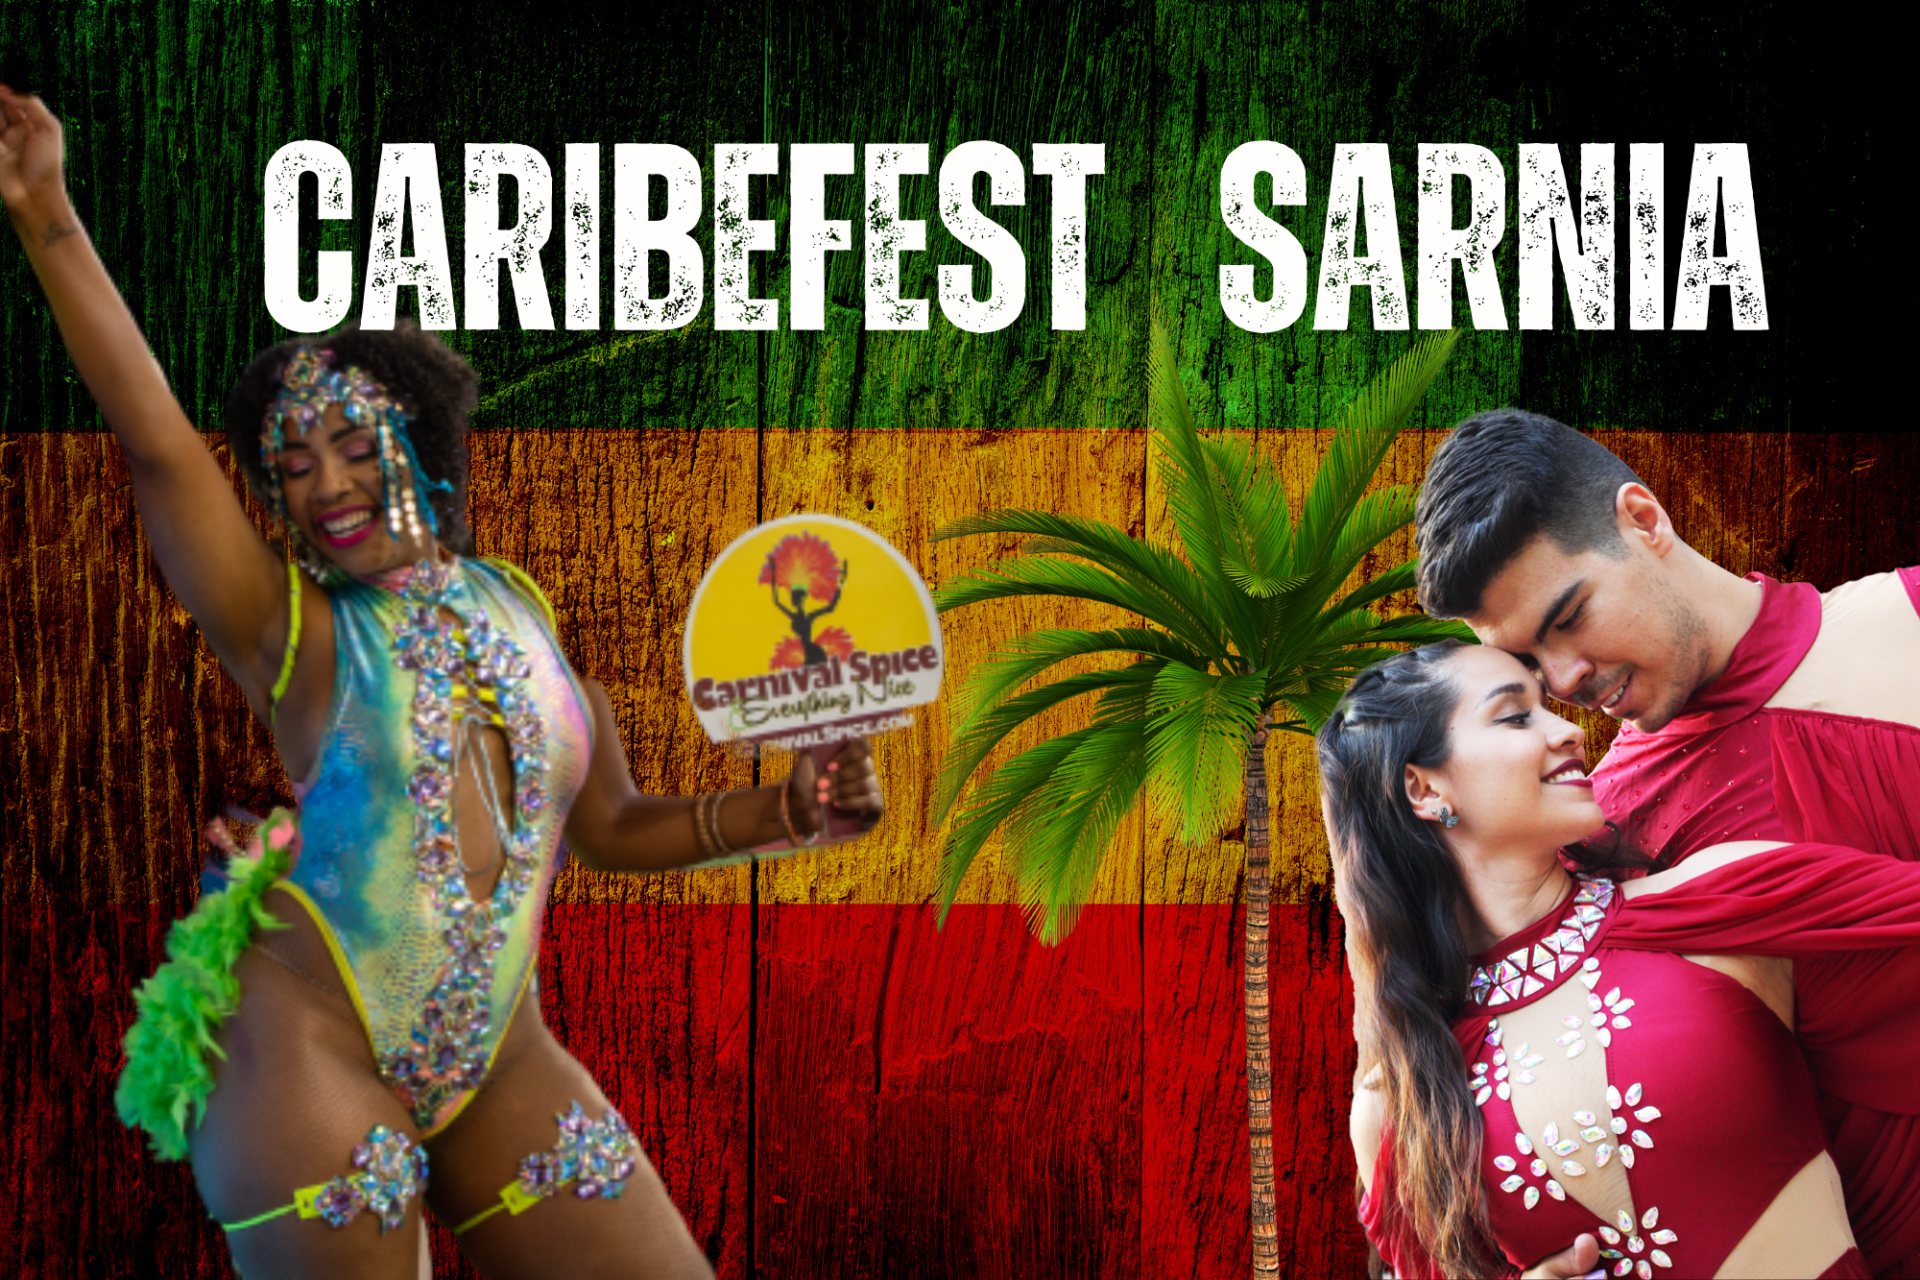 CaribeFest dancers